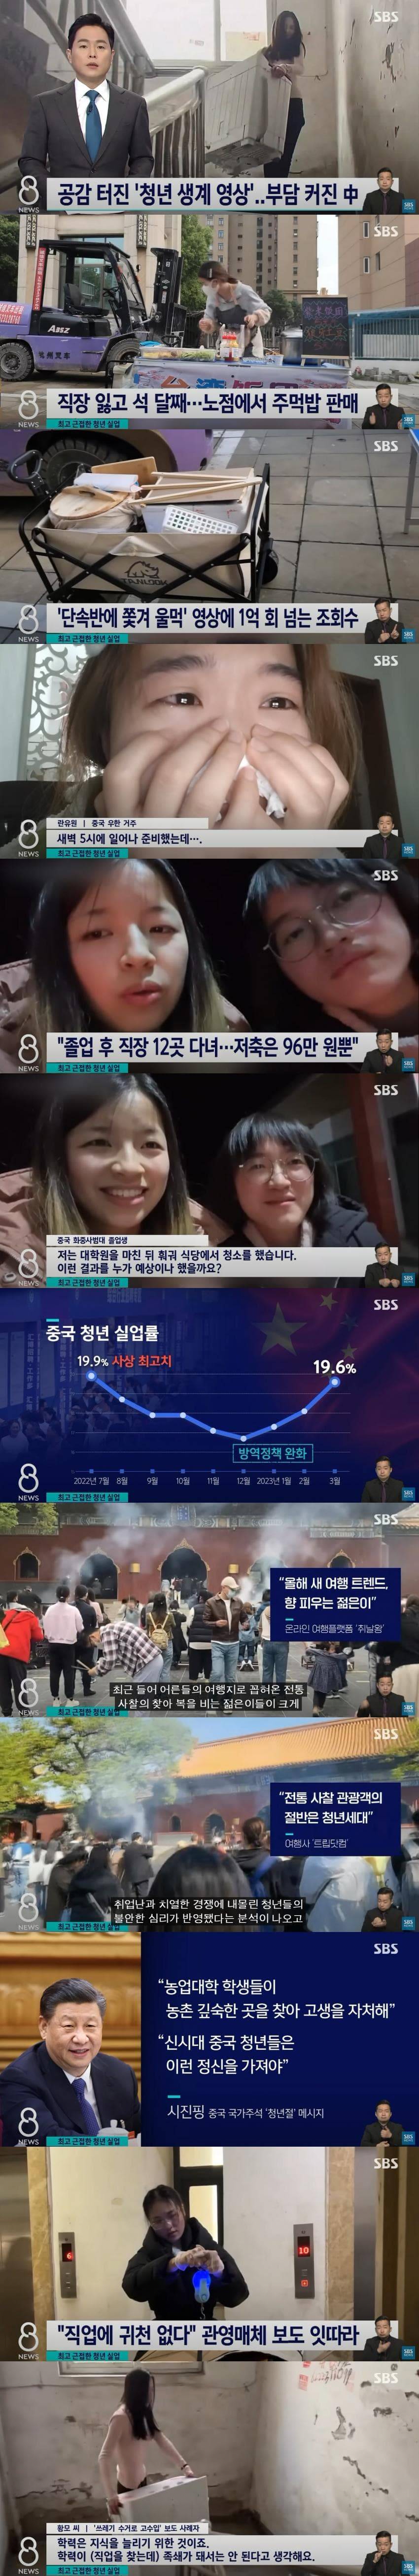 중국 청년실업 사상 최고치